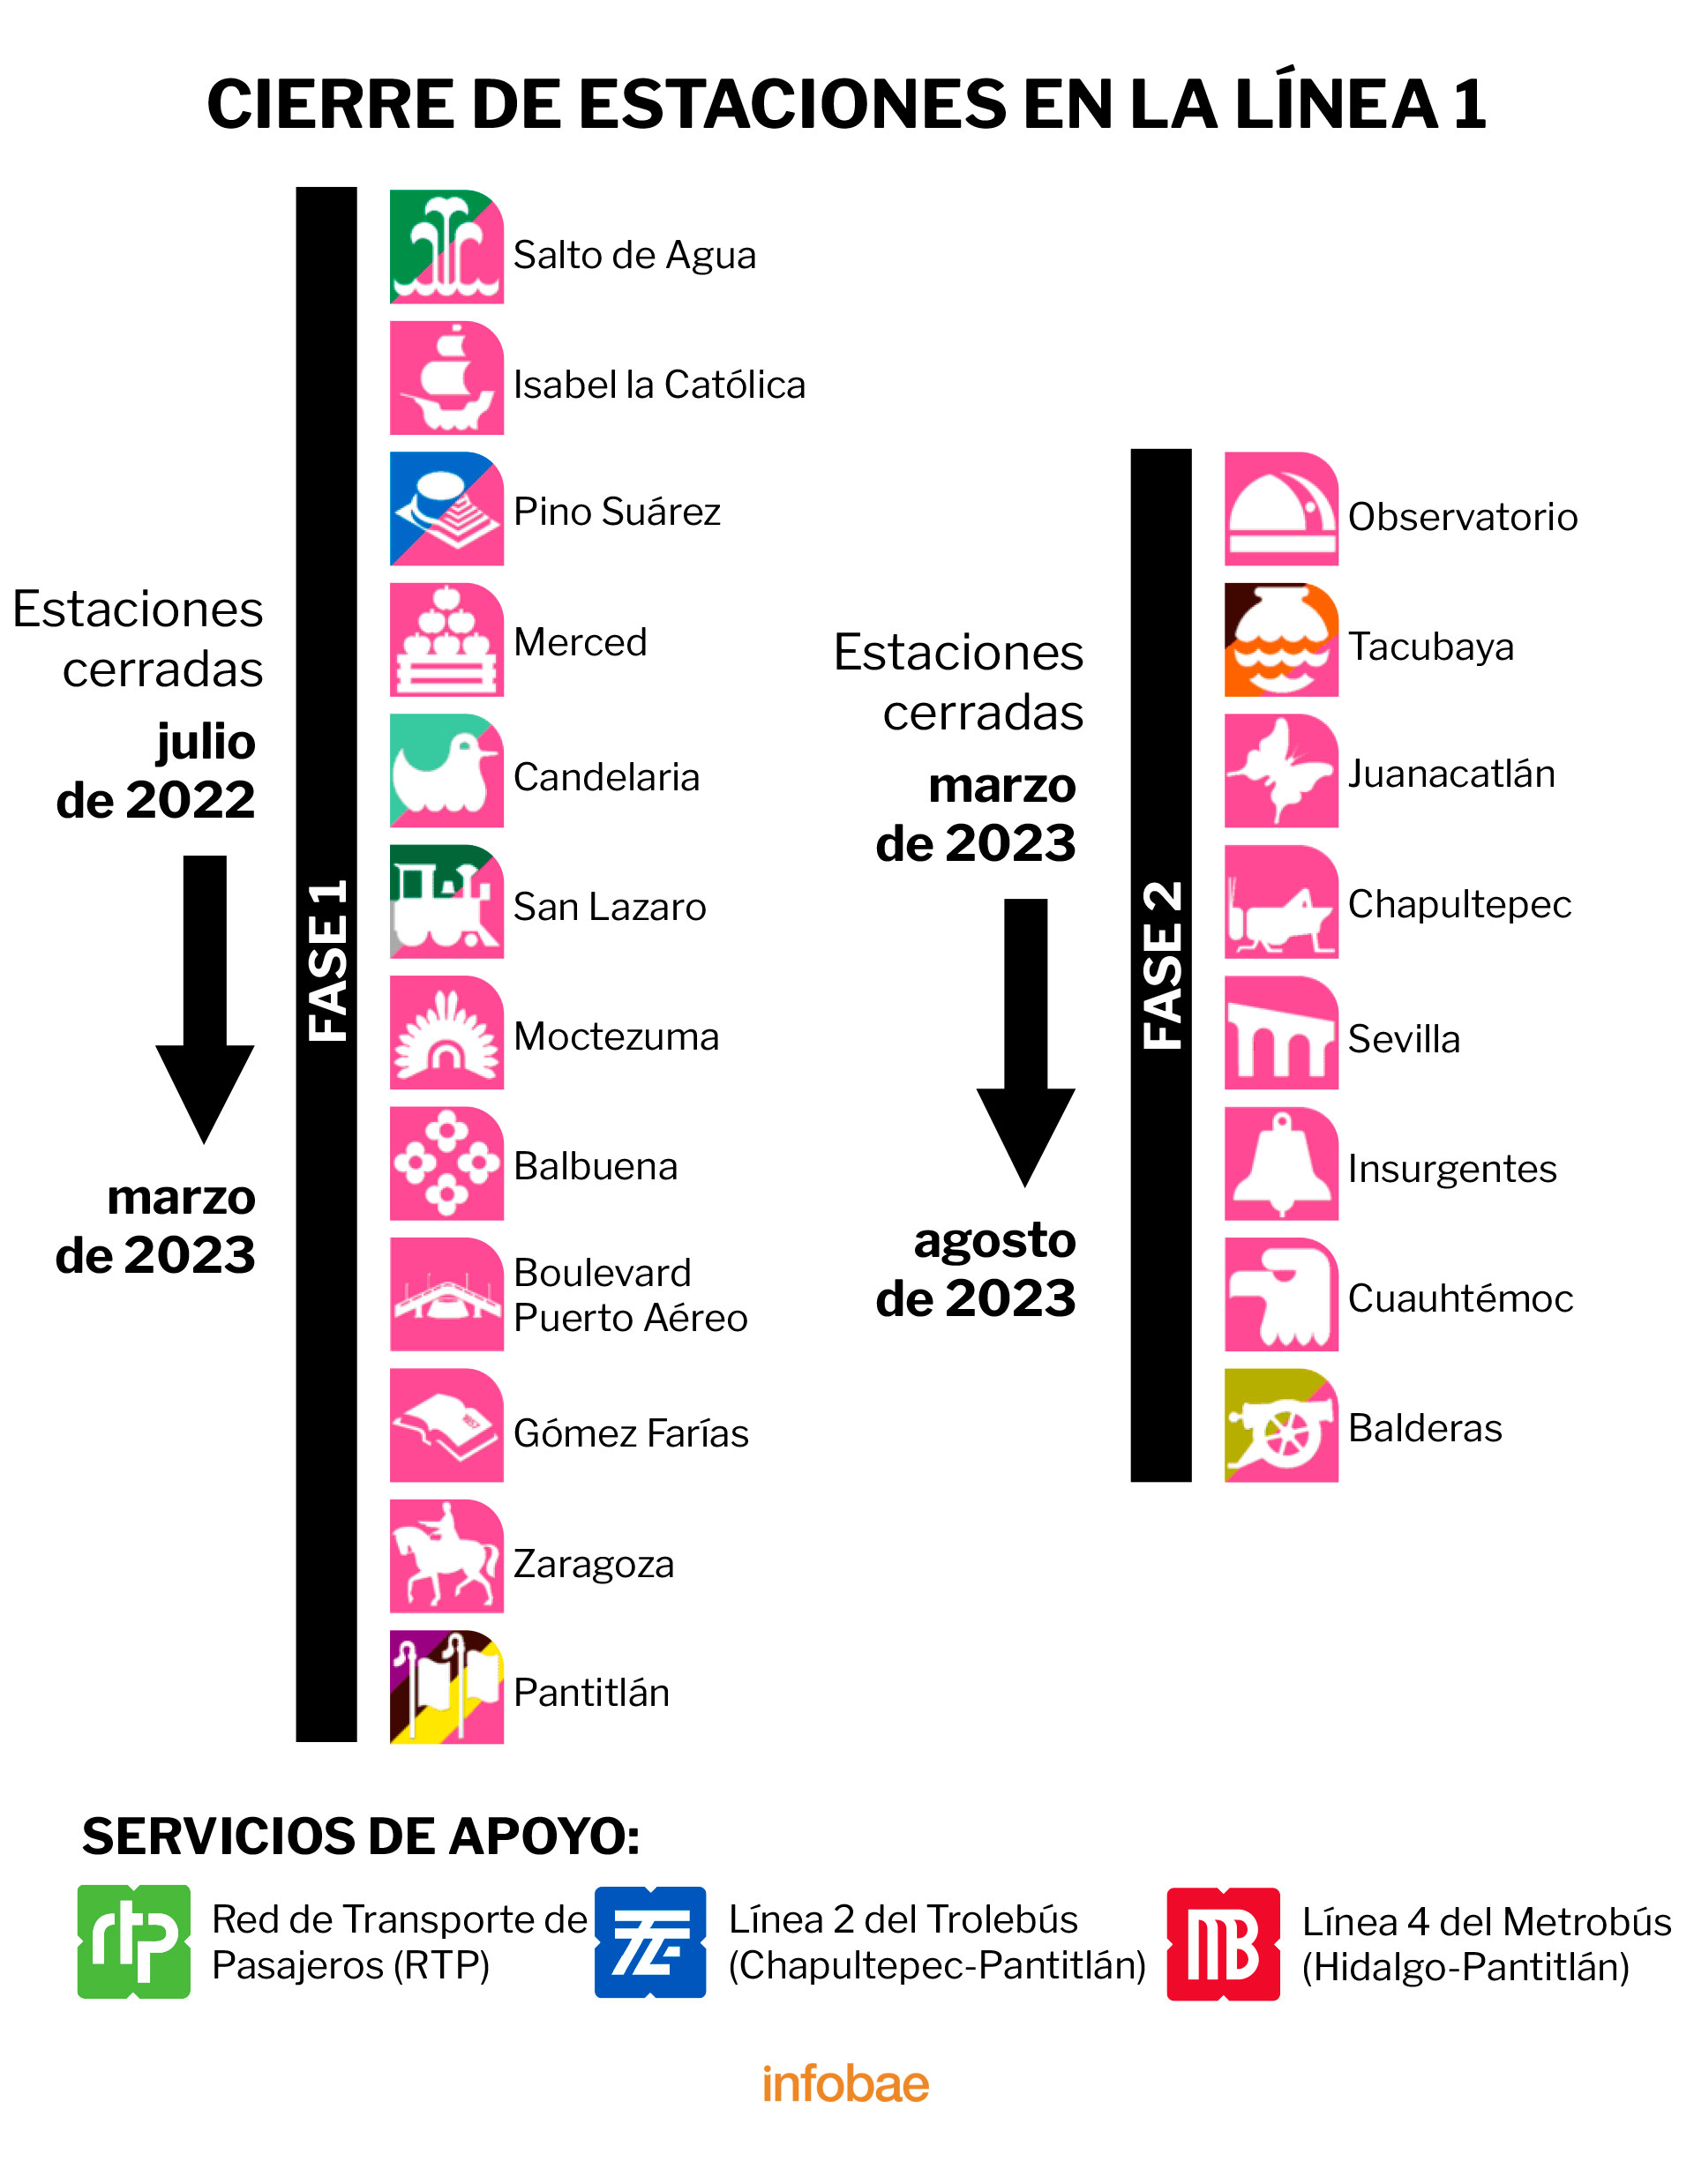 El STC anunció que el primer tramo en suspender el servicio será de Pantitlán a Salto del Agua. (Ilustración: Infobae)
